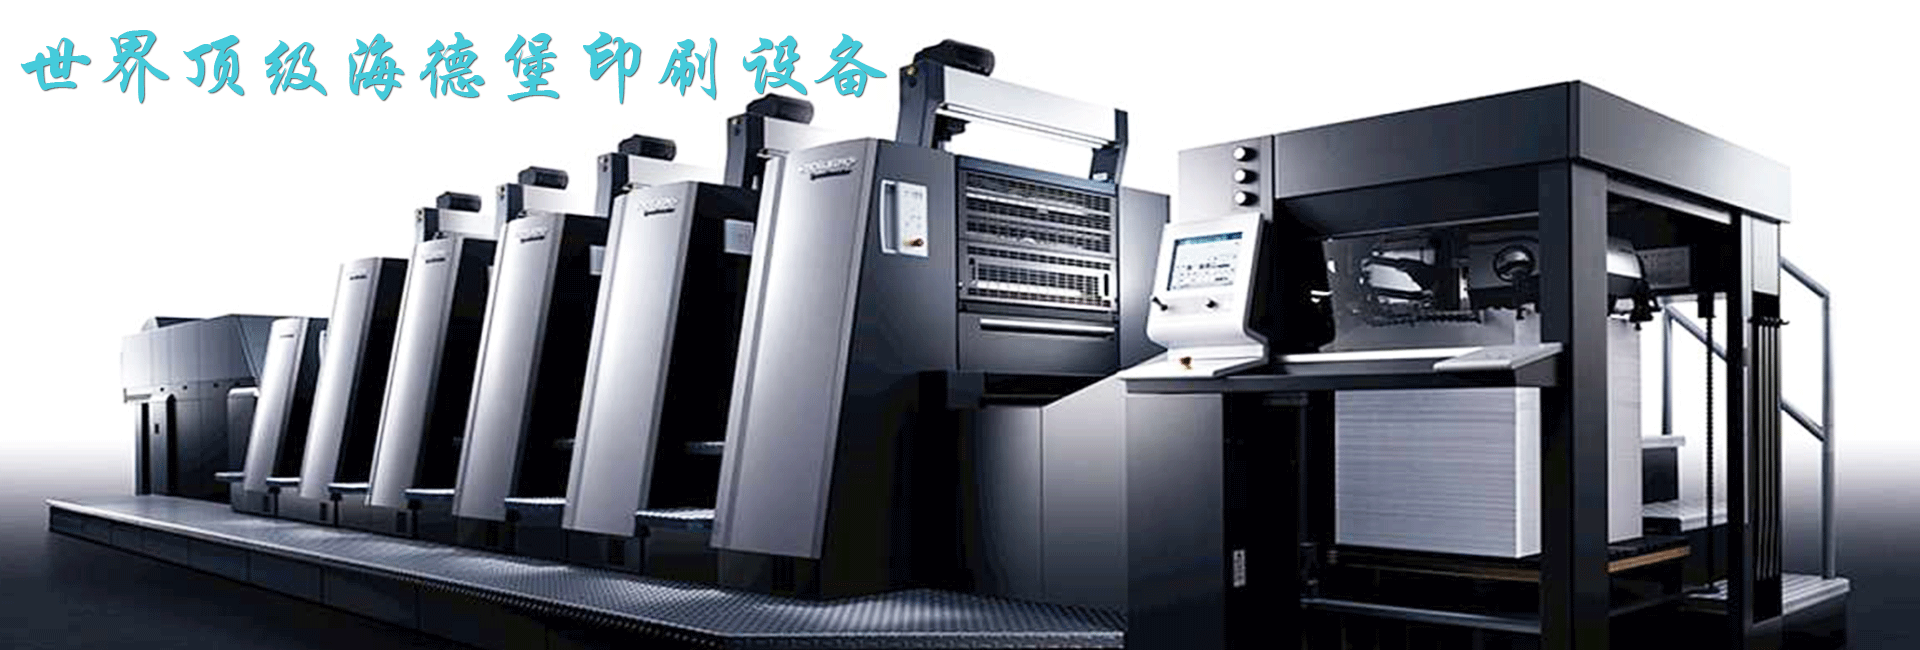 印刷厂家介绍德森全自动锡膏印刷机的特点